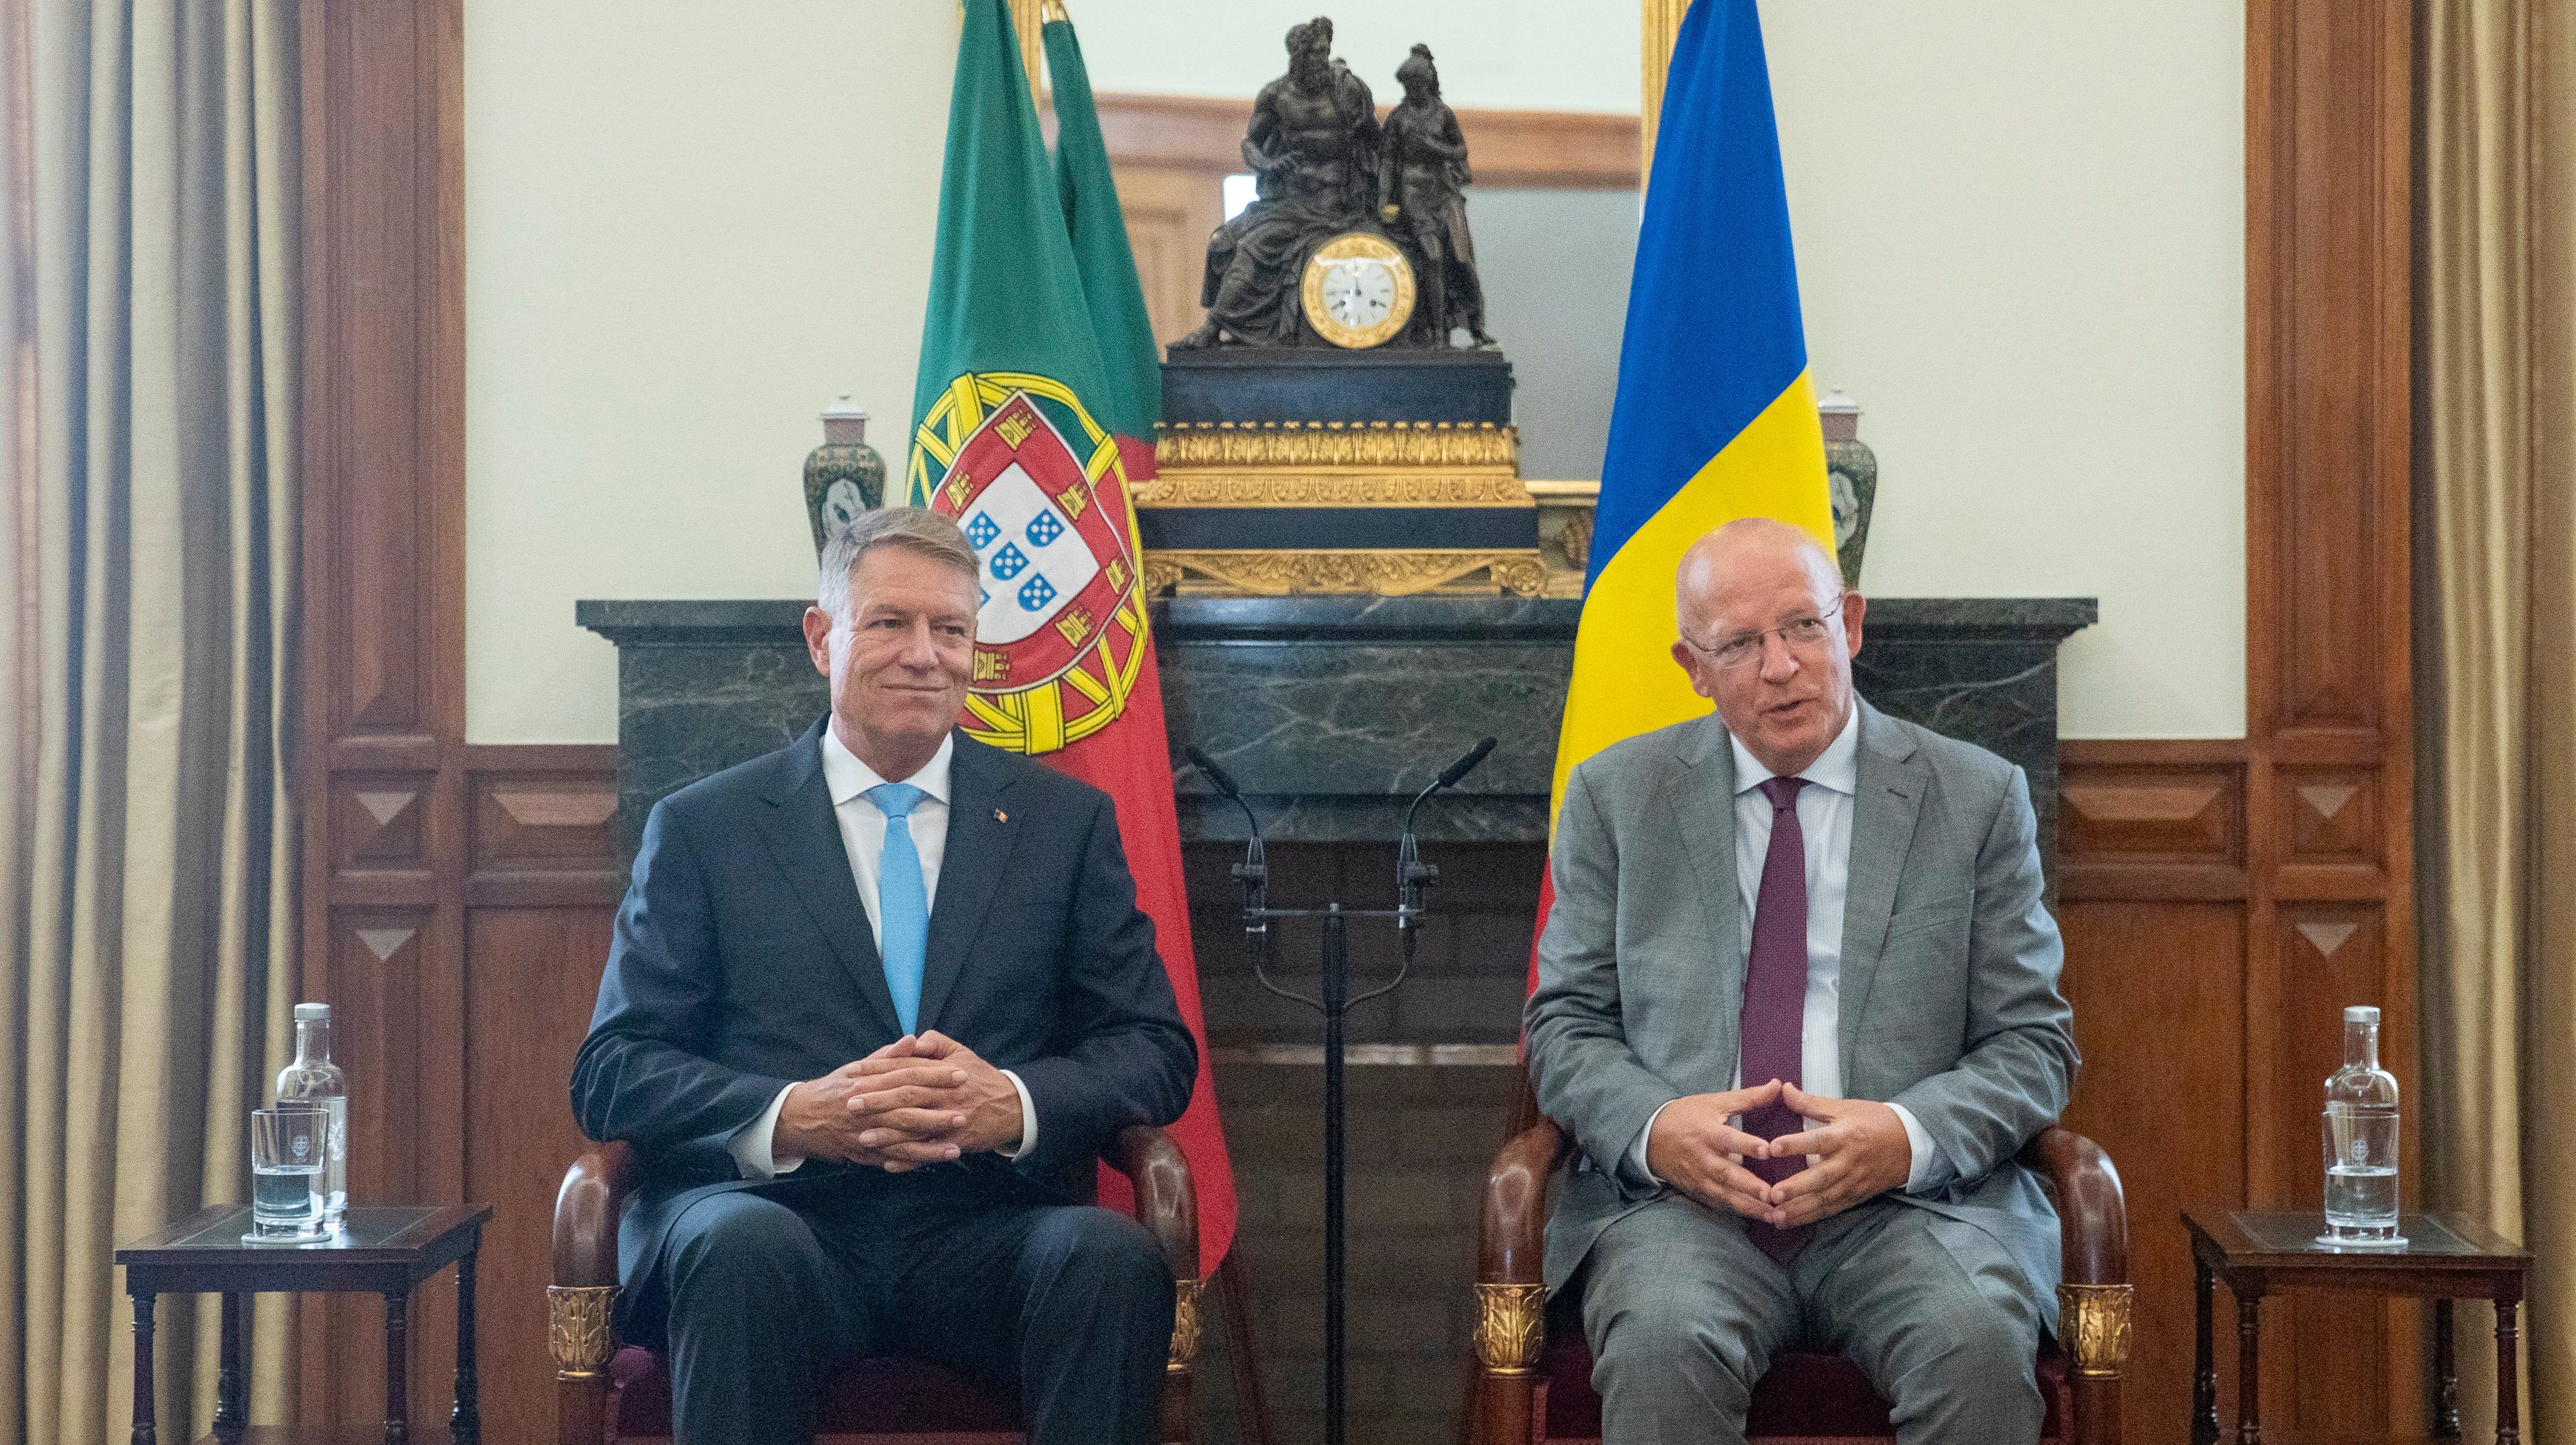 Os governos português e romeno assinaram acordos sobre desenvolvimento de energias renováveis e promoção de investimentos externos, tendo ainda debatido o alargamento da União Europeia a Leste